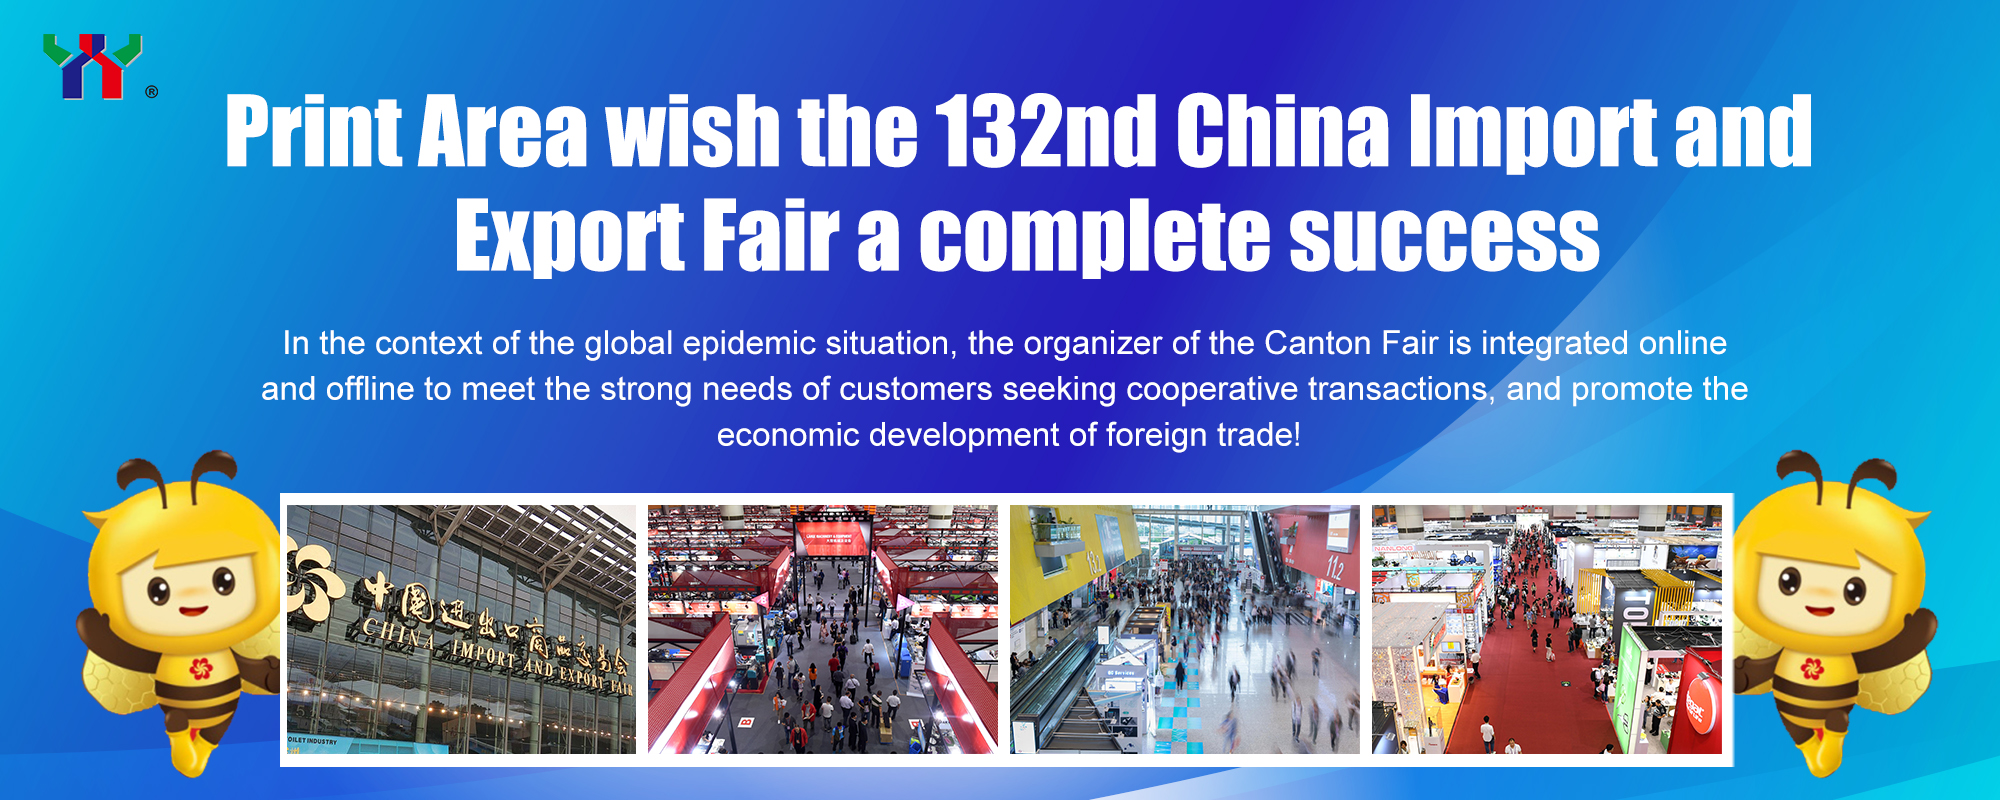 A Área de Impressão deseja um sucesso total à 132ª Feira de Importação e Exportação da China